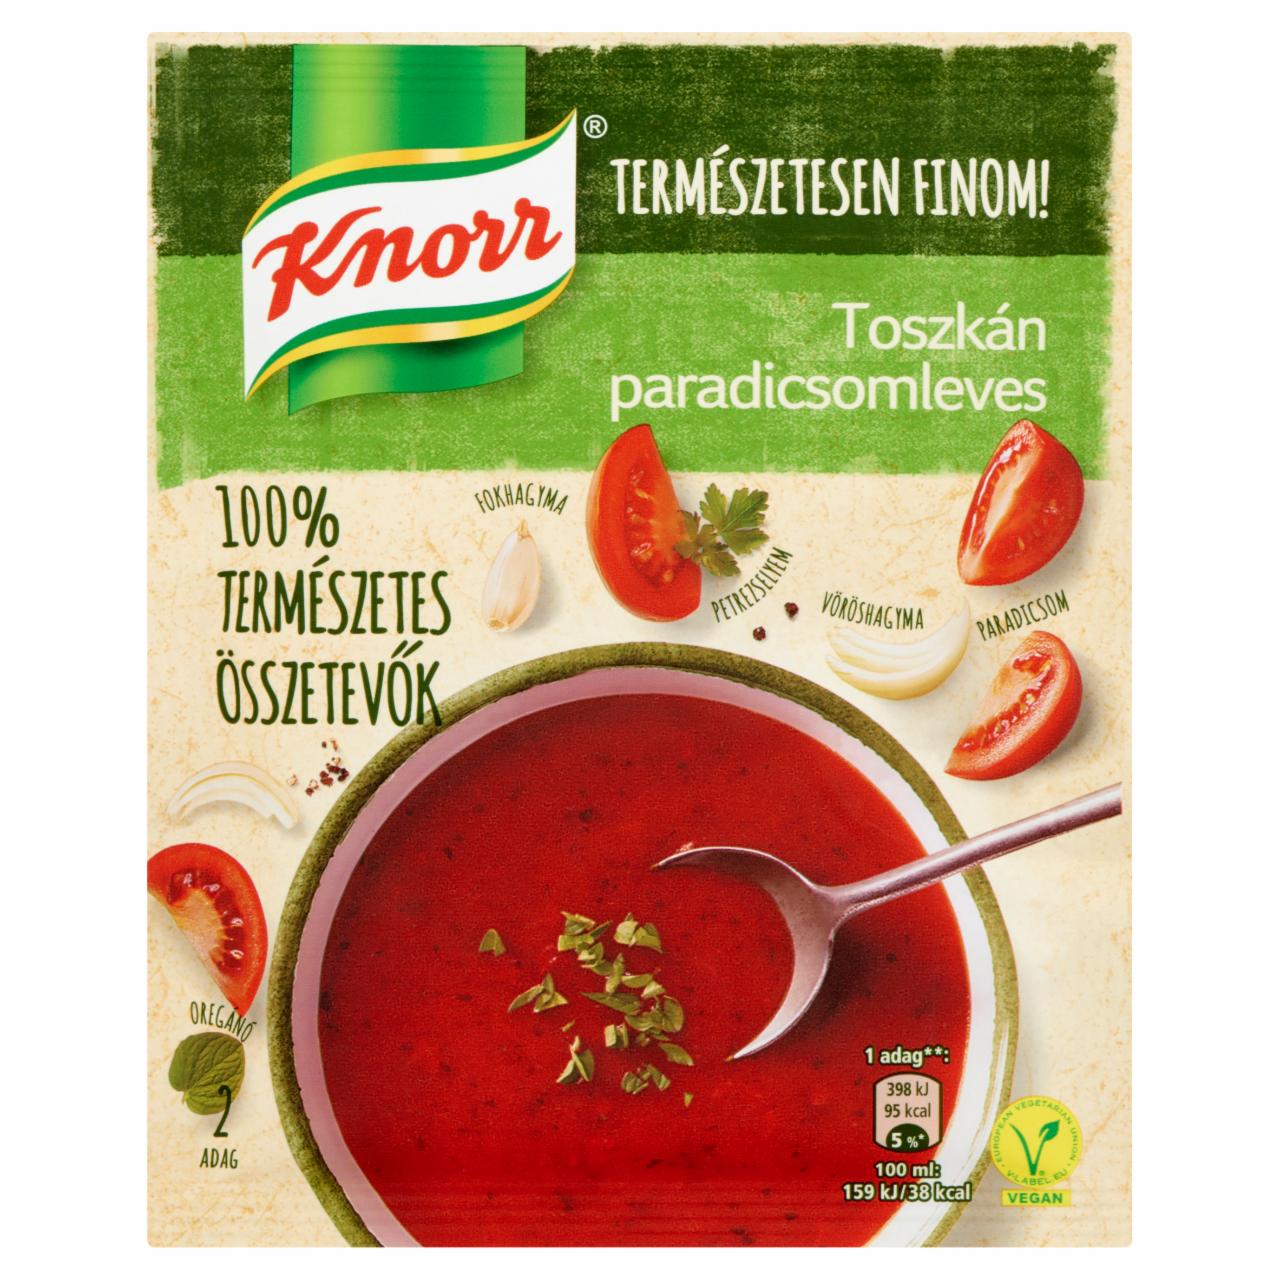 Képek - Toszkán paradicsomleves Knorr